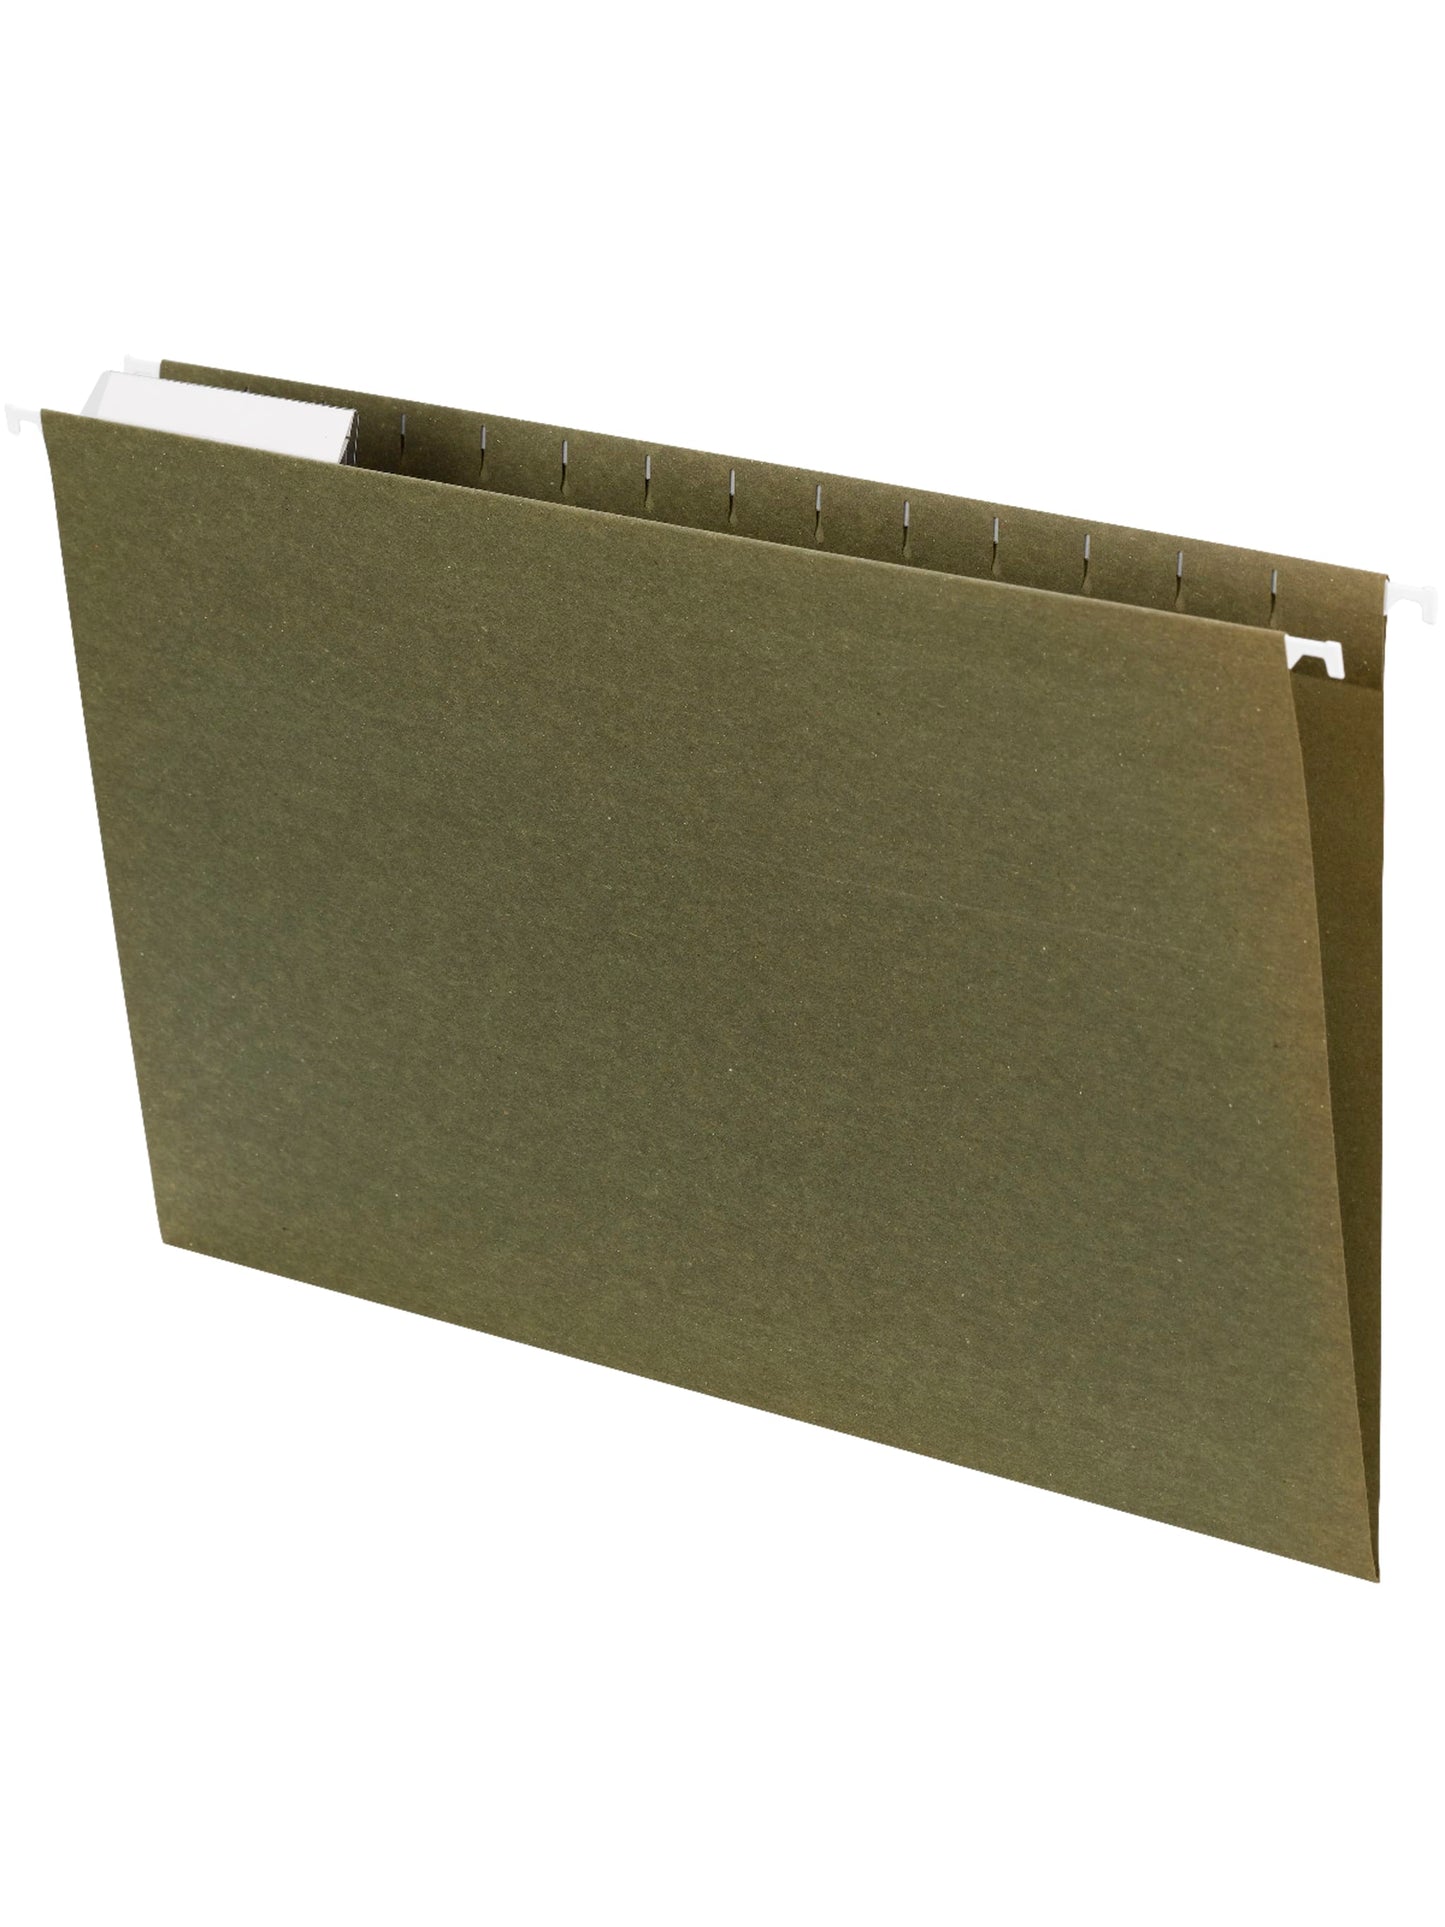 Standard Hanging File Folders, 1/3-Cut Adjustable Tab, Standard Green Color, Legal Size, Set of 25, 086486641395